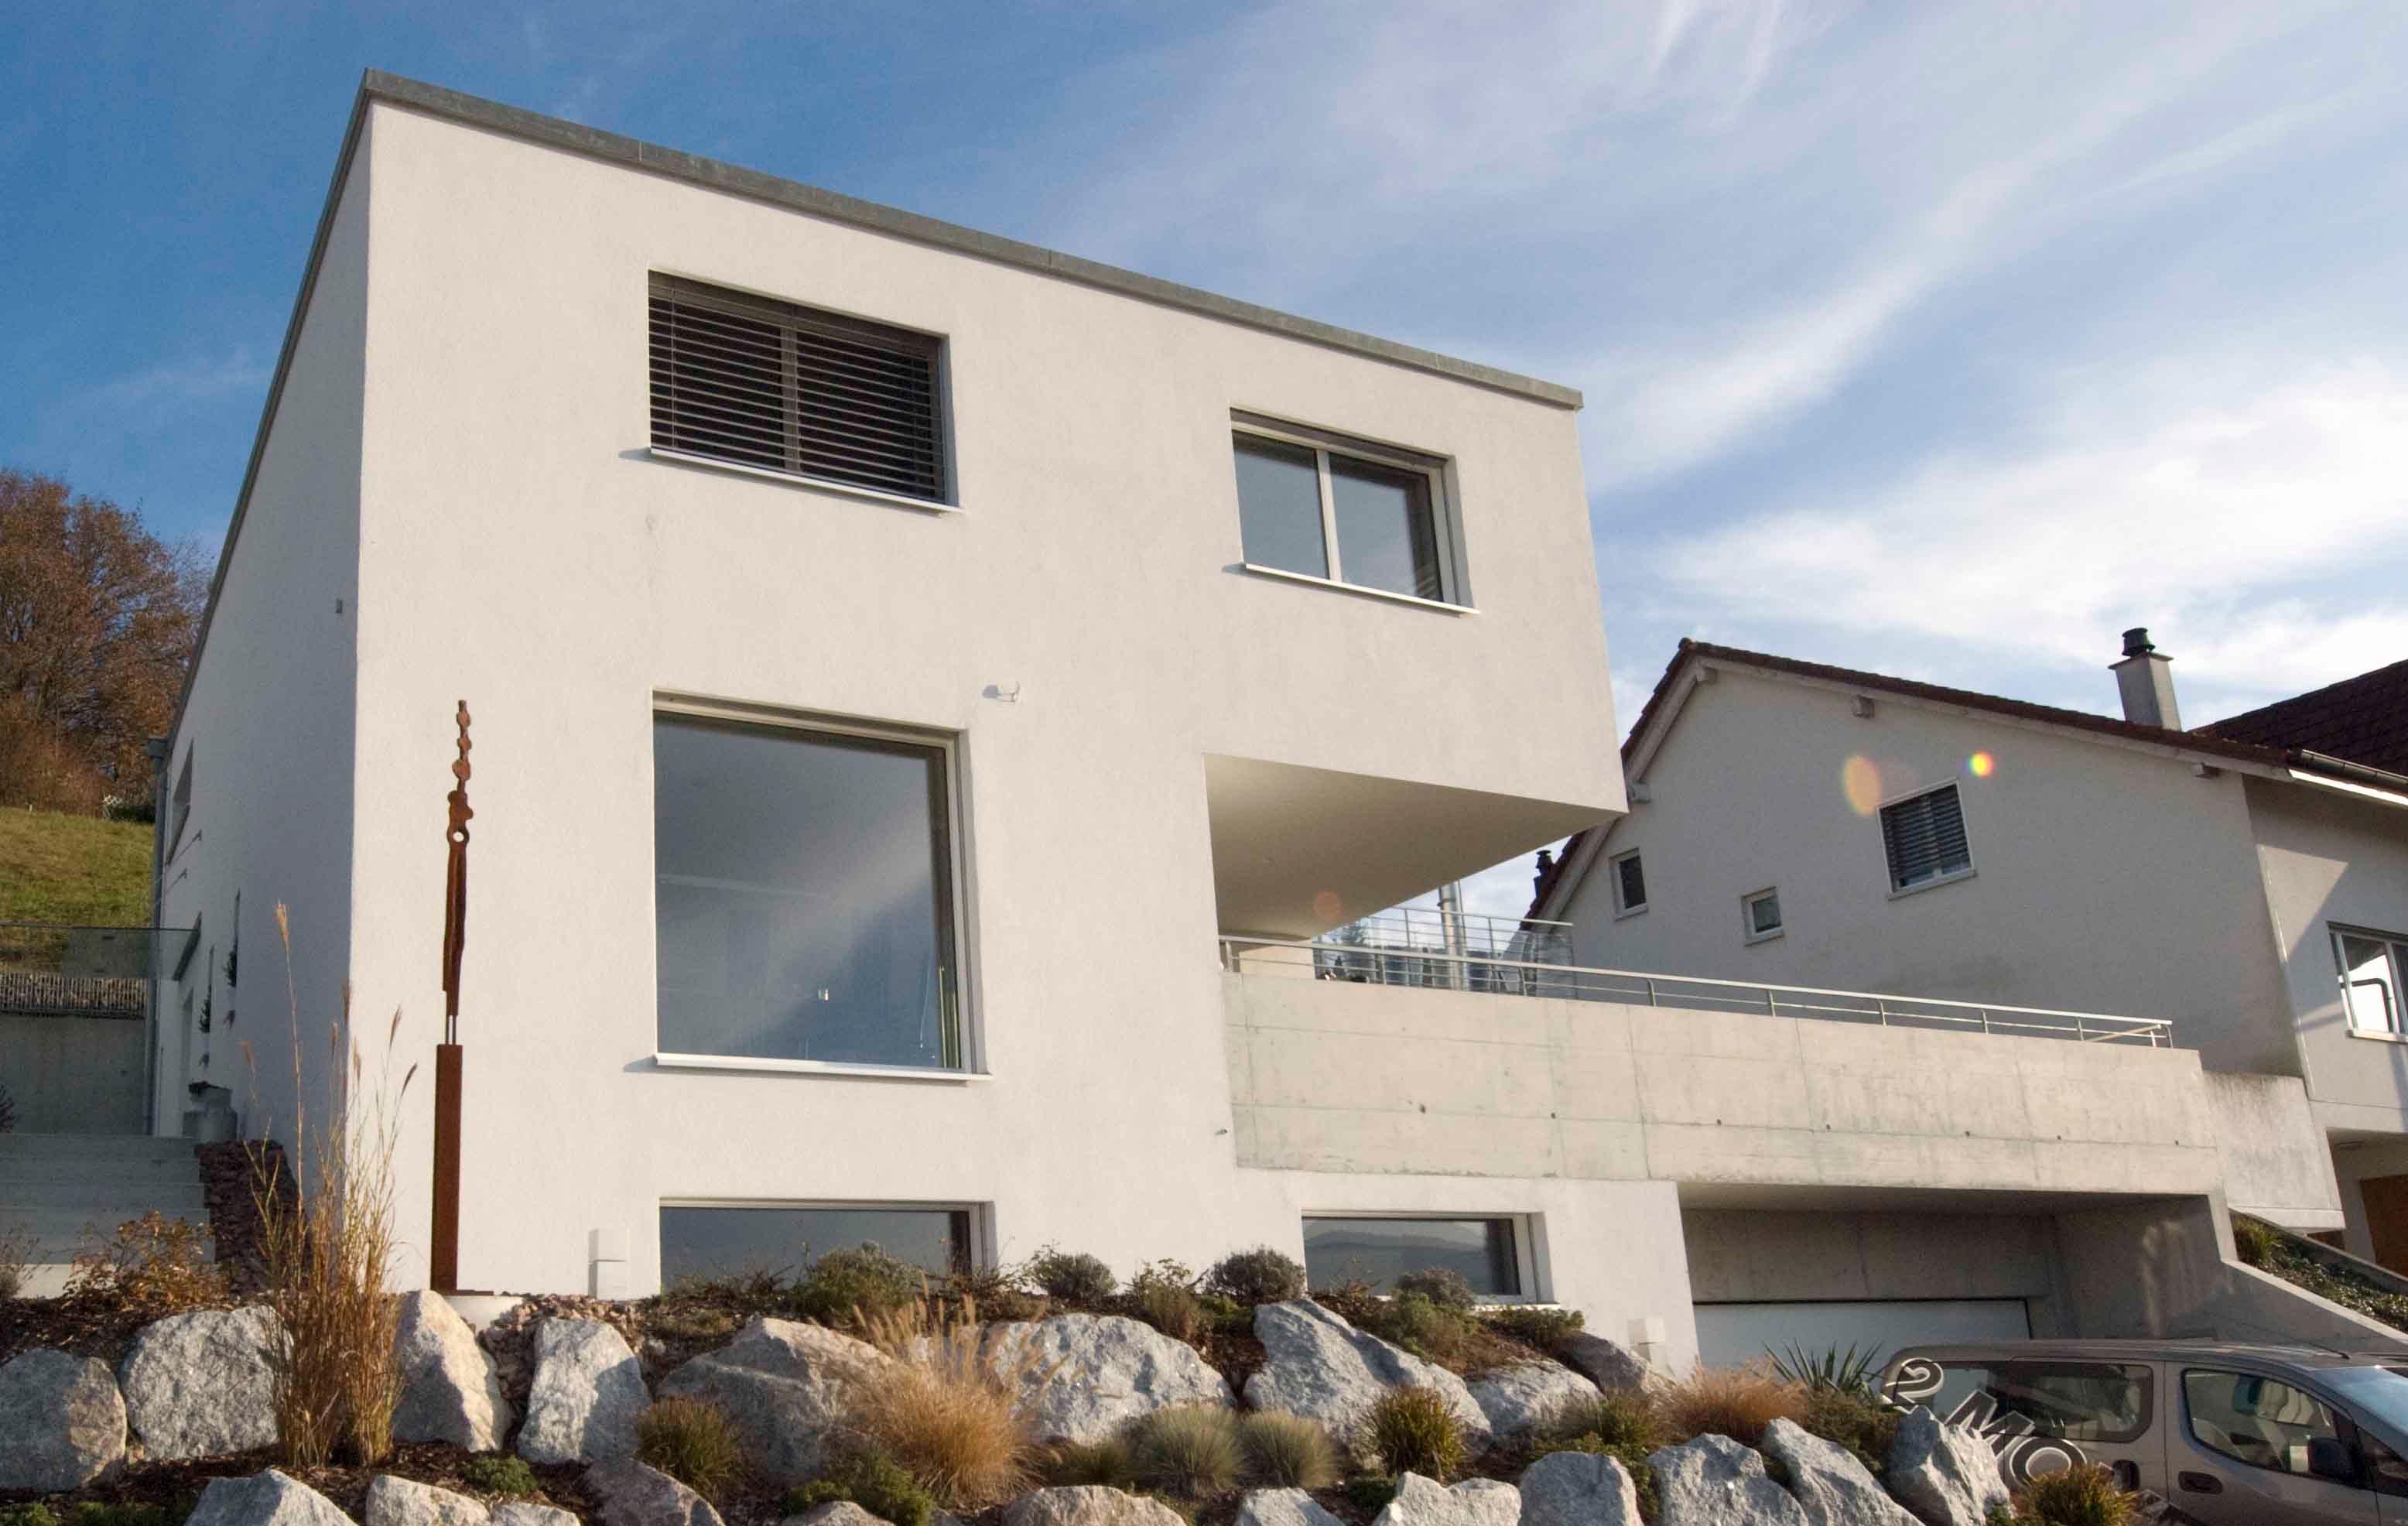  Architektur-Reportage Frick Hanglage: Aussenansicht modernes Einfamilienhaus mit Steinmauer